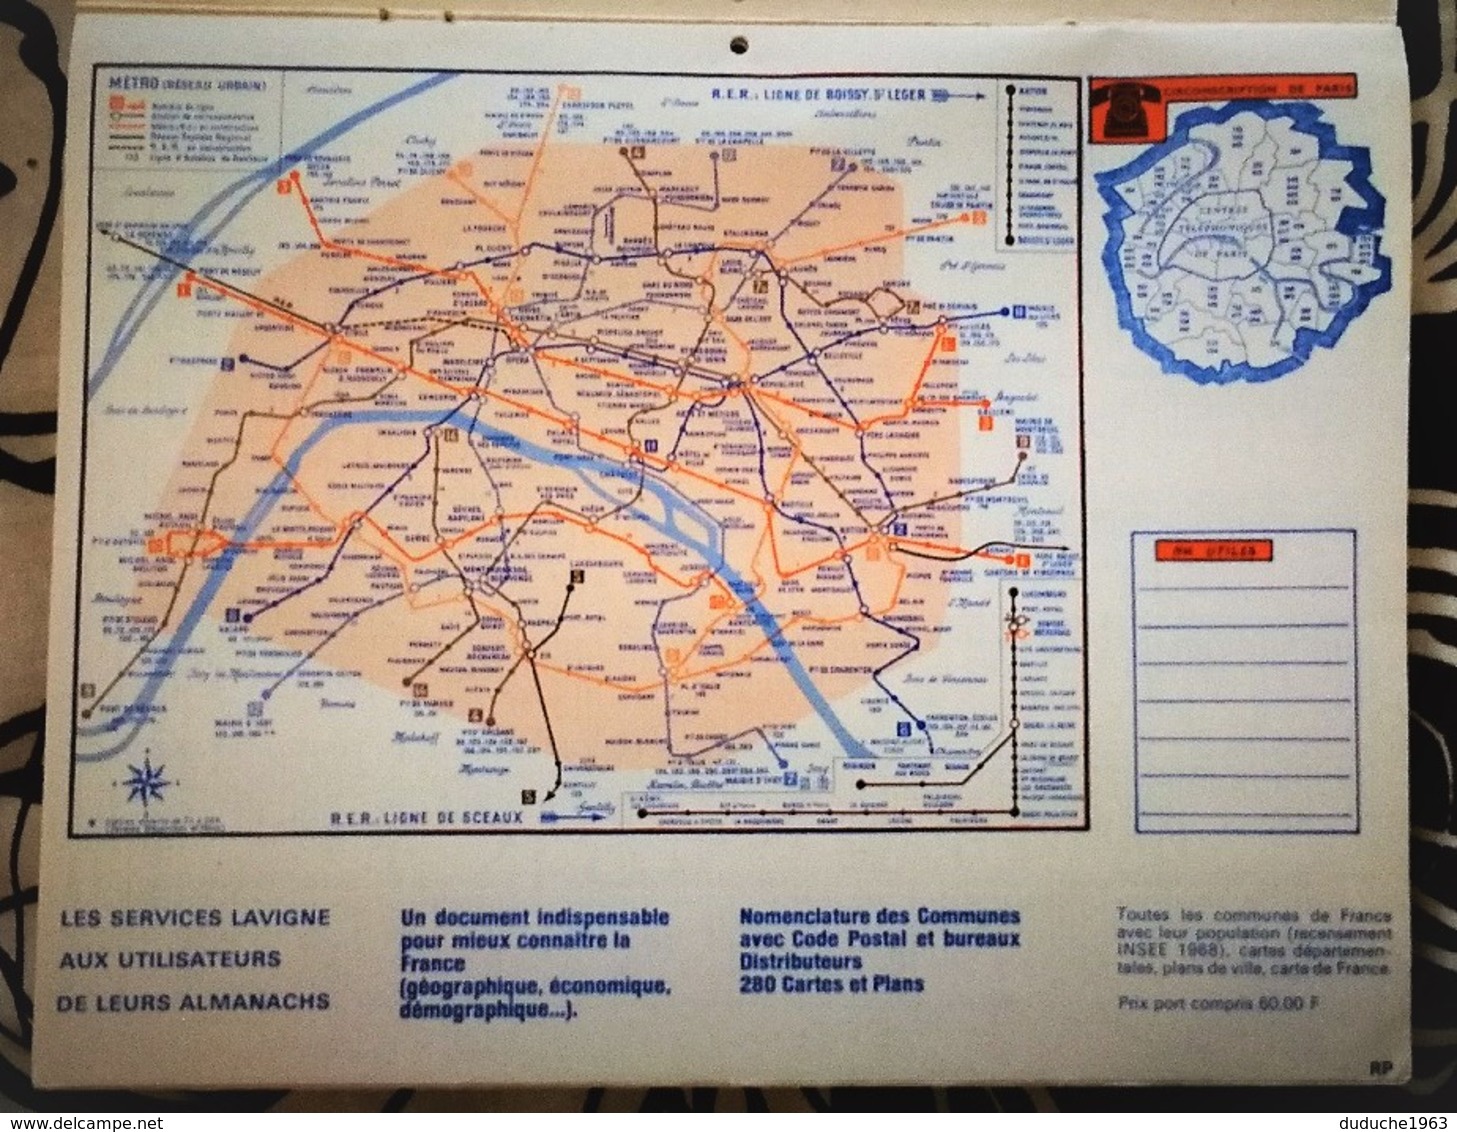 Calendrier double - Almanach Disney: 75.Paris 1975  Plan Paris,région,métro,RER